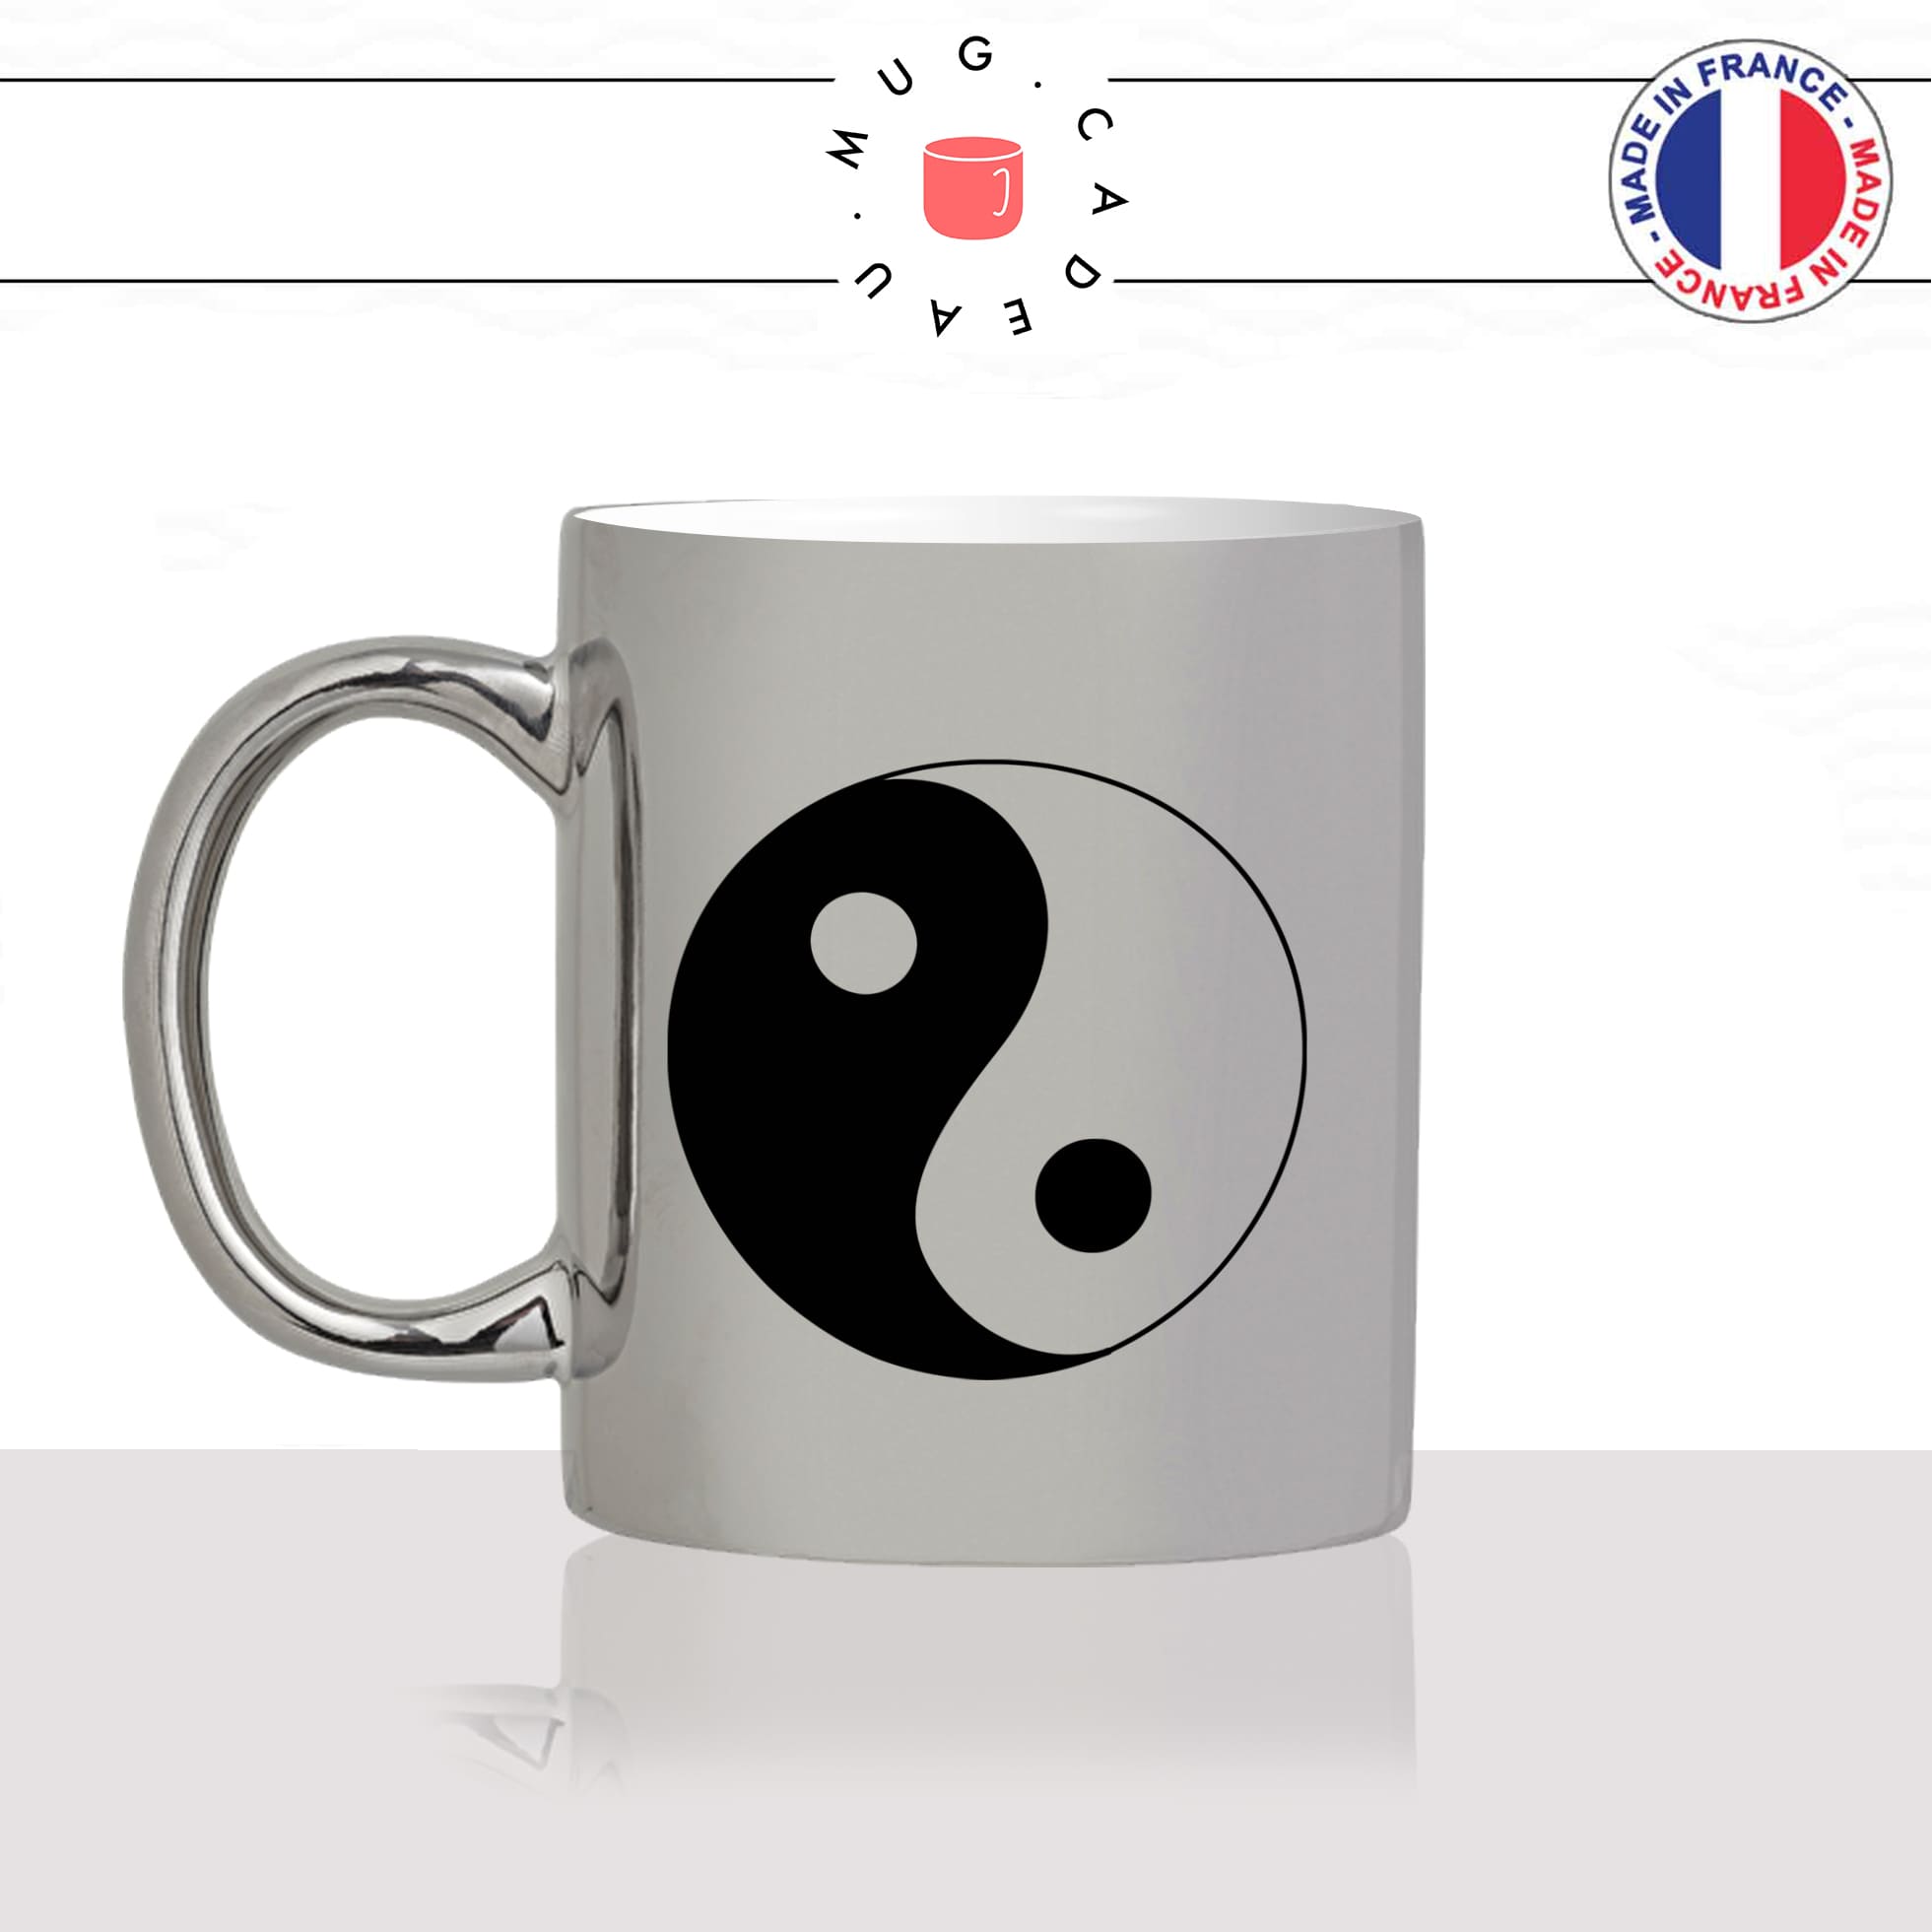 mug-tasse-argent-argenté-silver-dessin-religion-yin-yang-bouddha-bouddhiste-amour-paix-couple-noir-blanc-idée-cadeau-fun-cool-café-thé